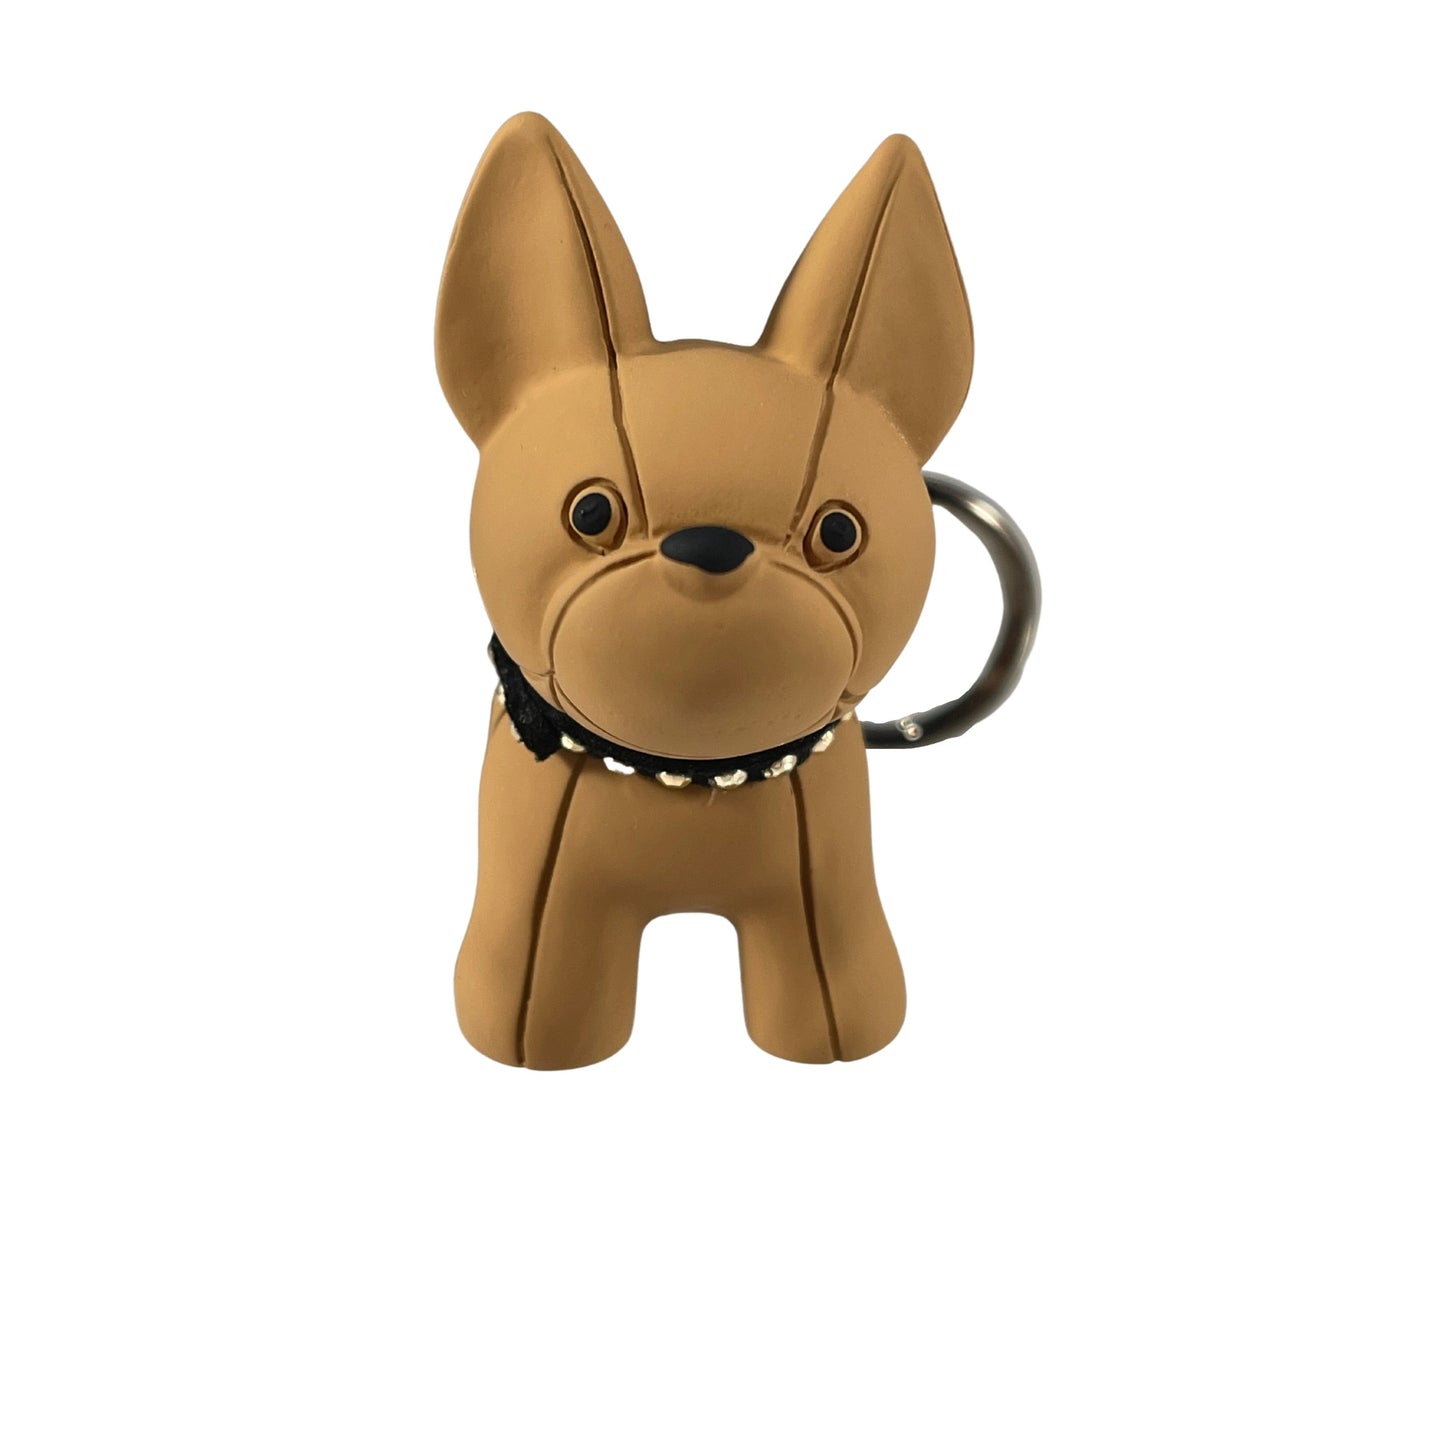 Tan Bulldog keychain